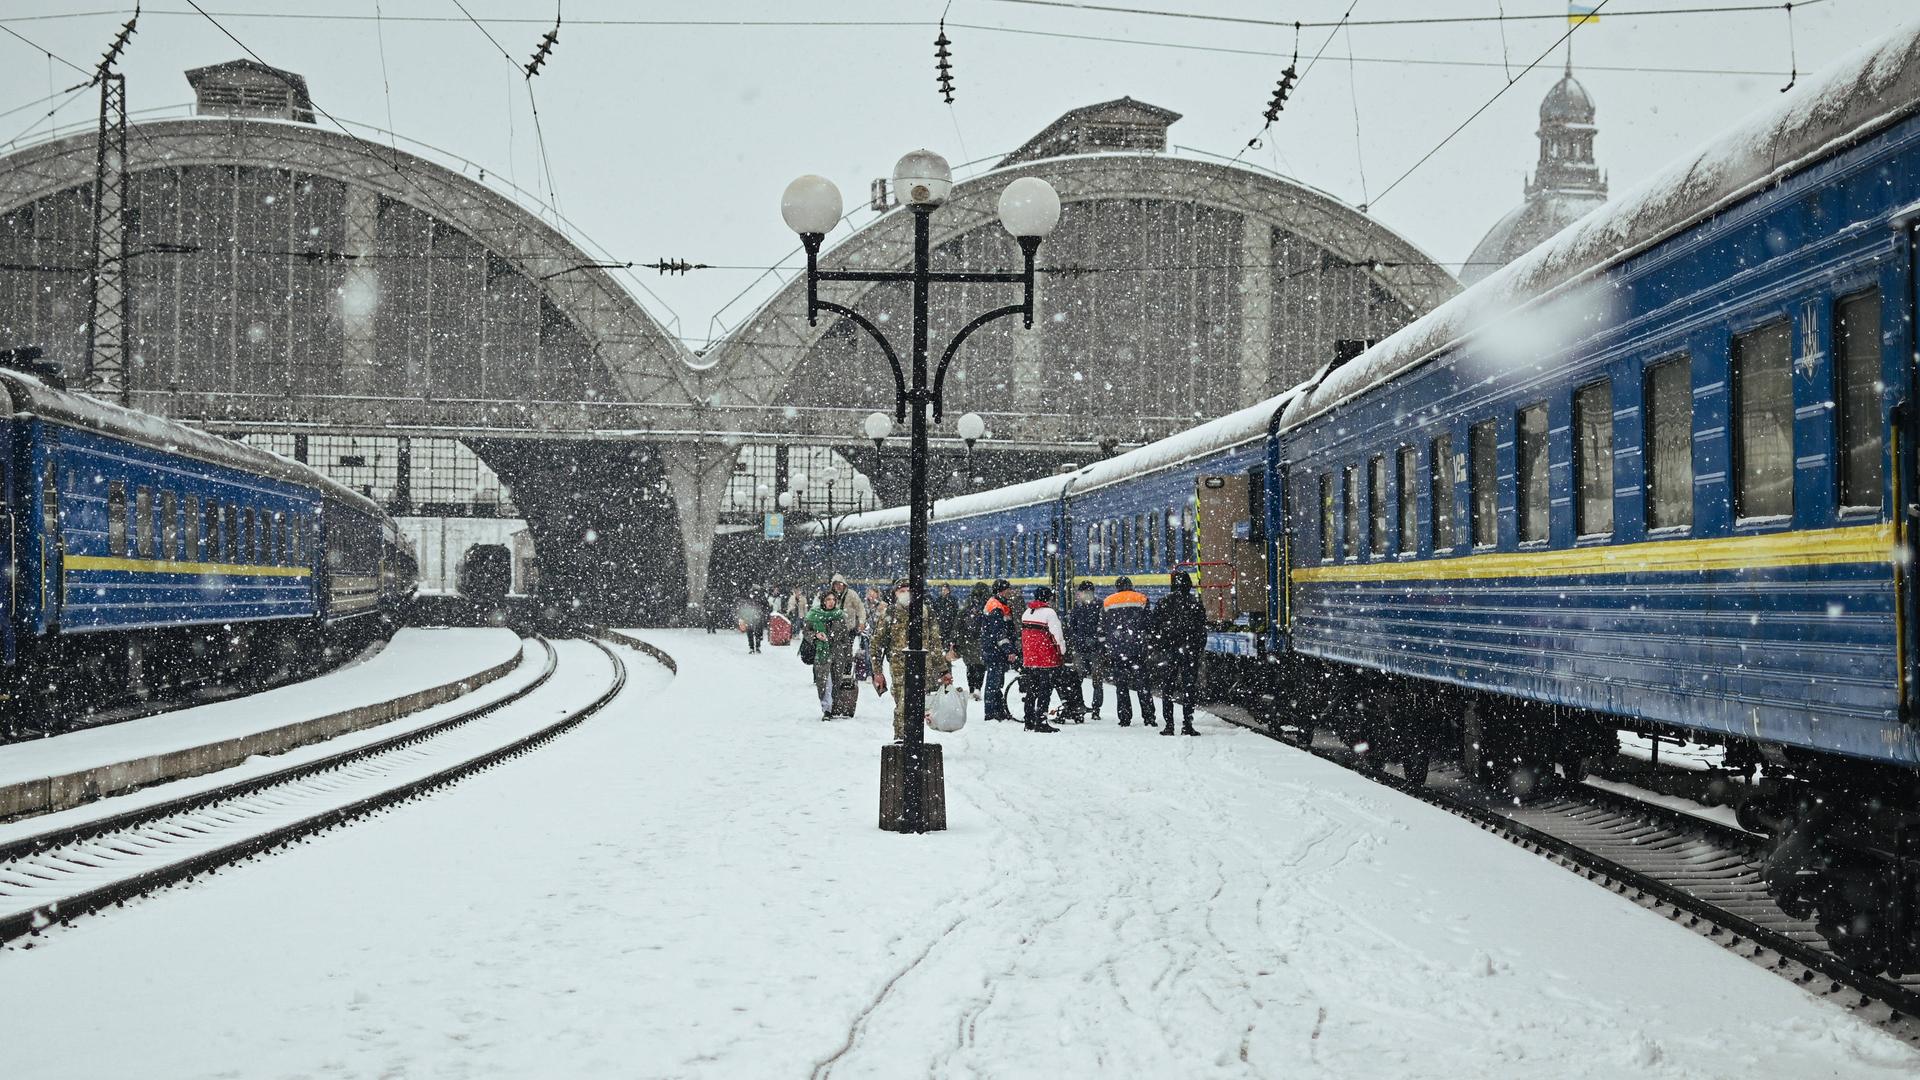 Blick auf einen Bahnhof mit verschneiten Bahnsteigen